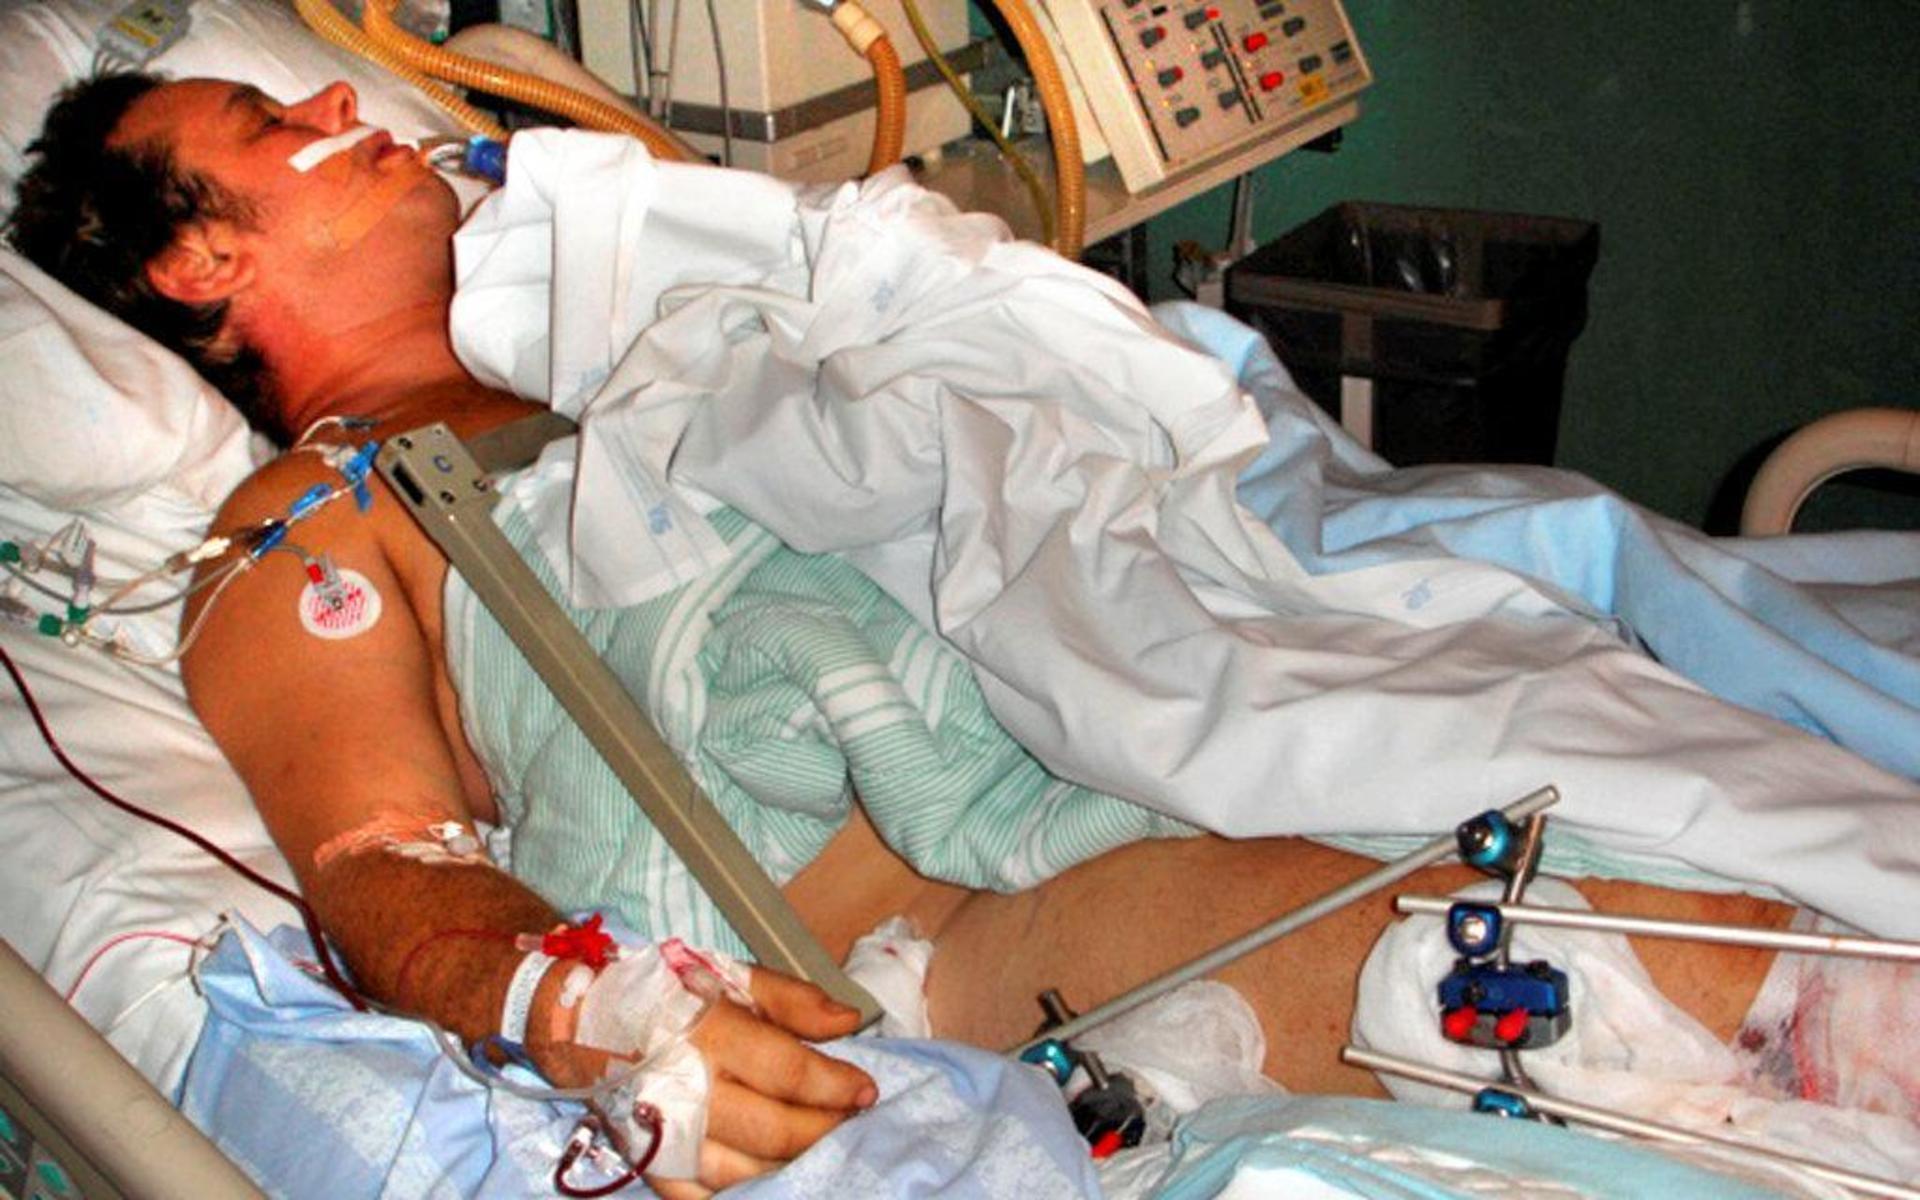 Johan Hermansson låg nedsövd efter den hemska olyckan i oktober 2006. Han hade allvarliga skador över nästan hela kroppen.